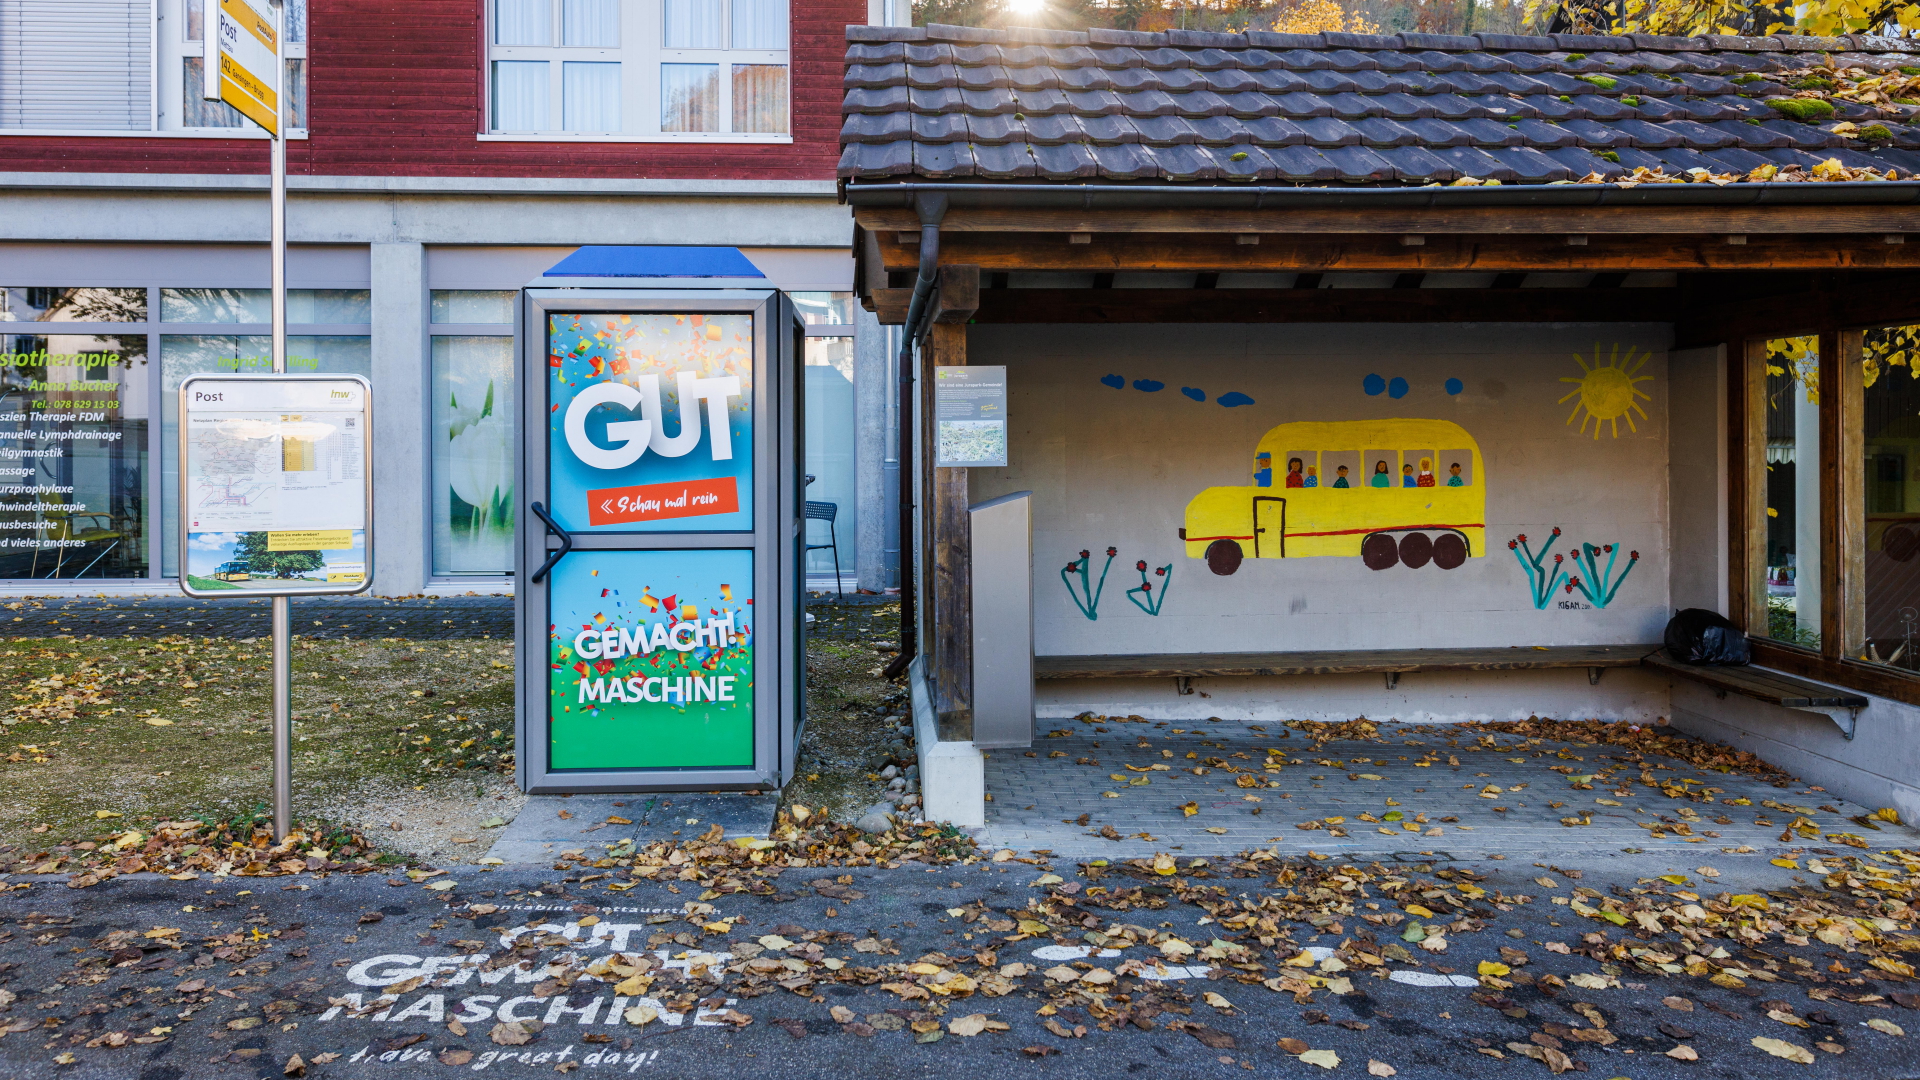 Die "Gut gemacht"-Maschine, untergebracht in einer alten Telefonzelle im Schweizer Dorf Mettauertal. | dpa